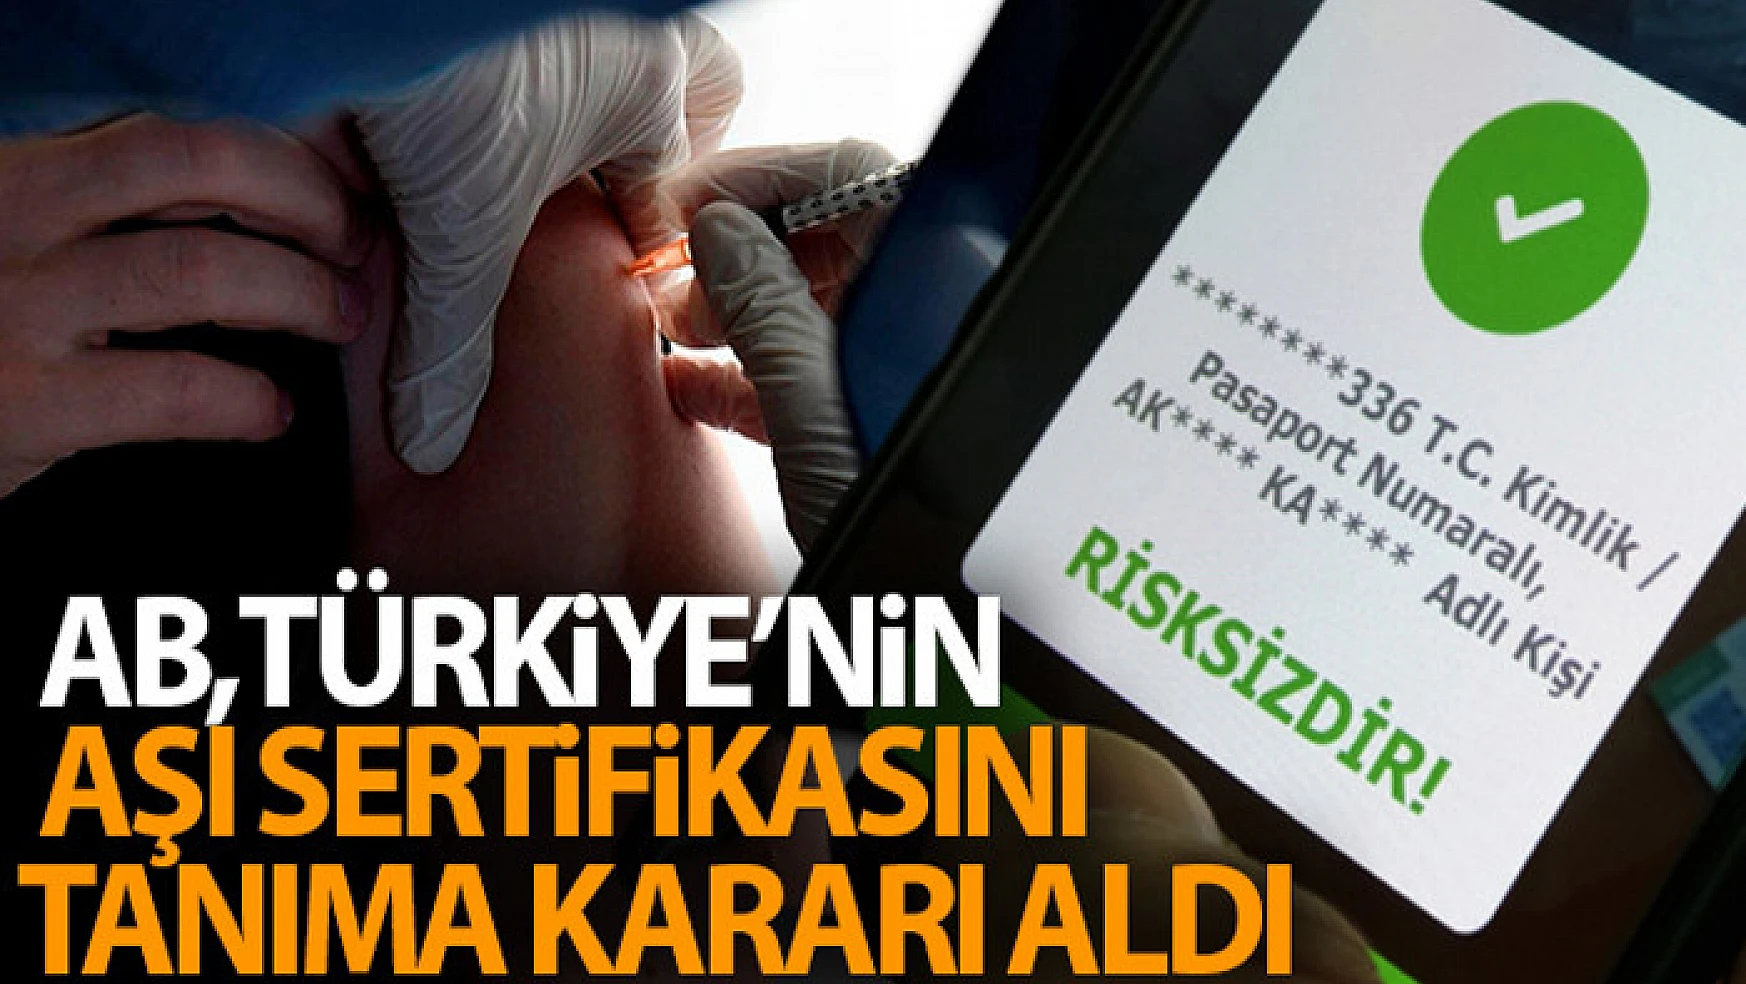 Avrupa Birliği, Türkiye'nin aşı sertifikasını tanıma kararı aldı